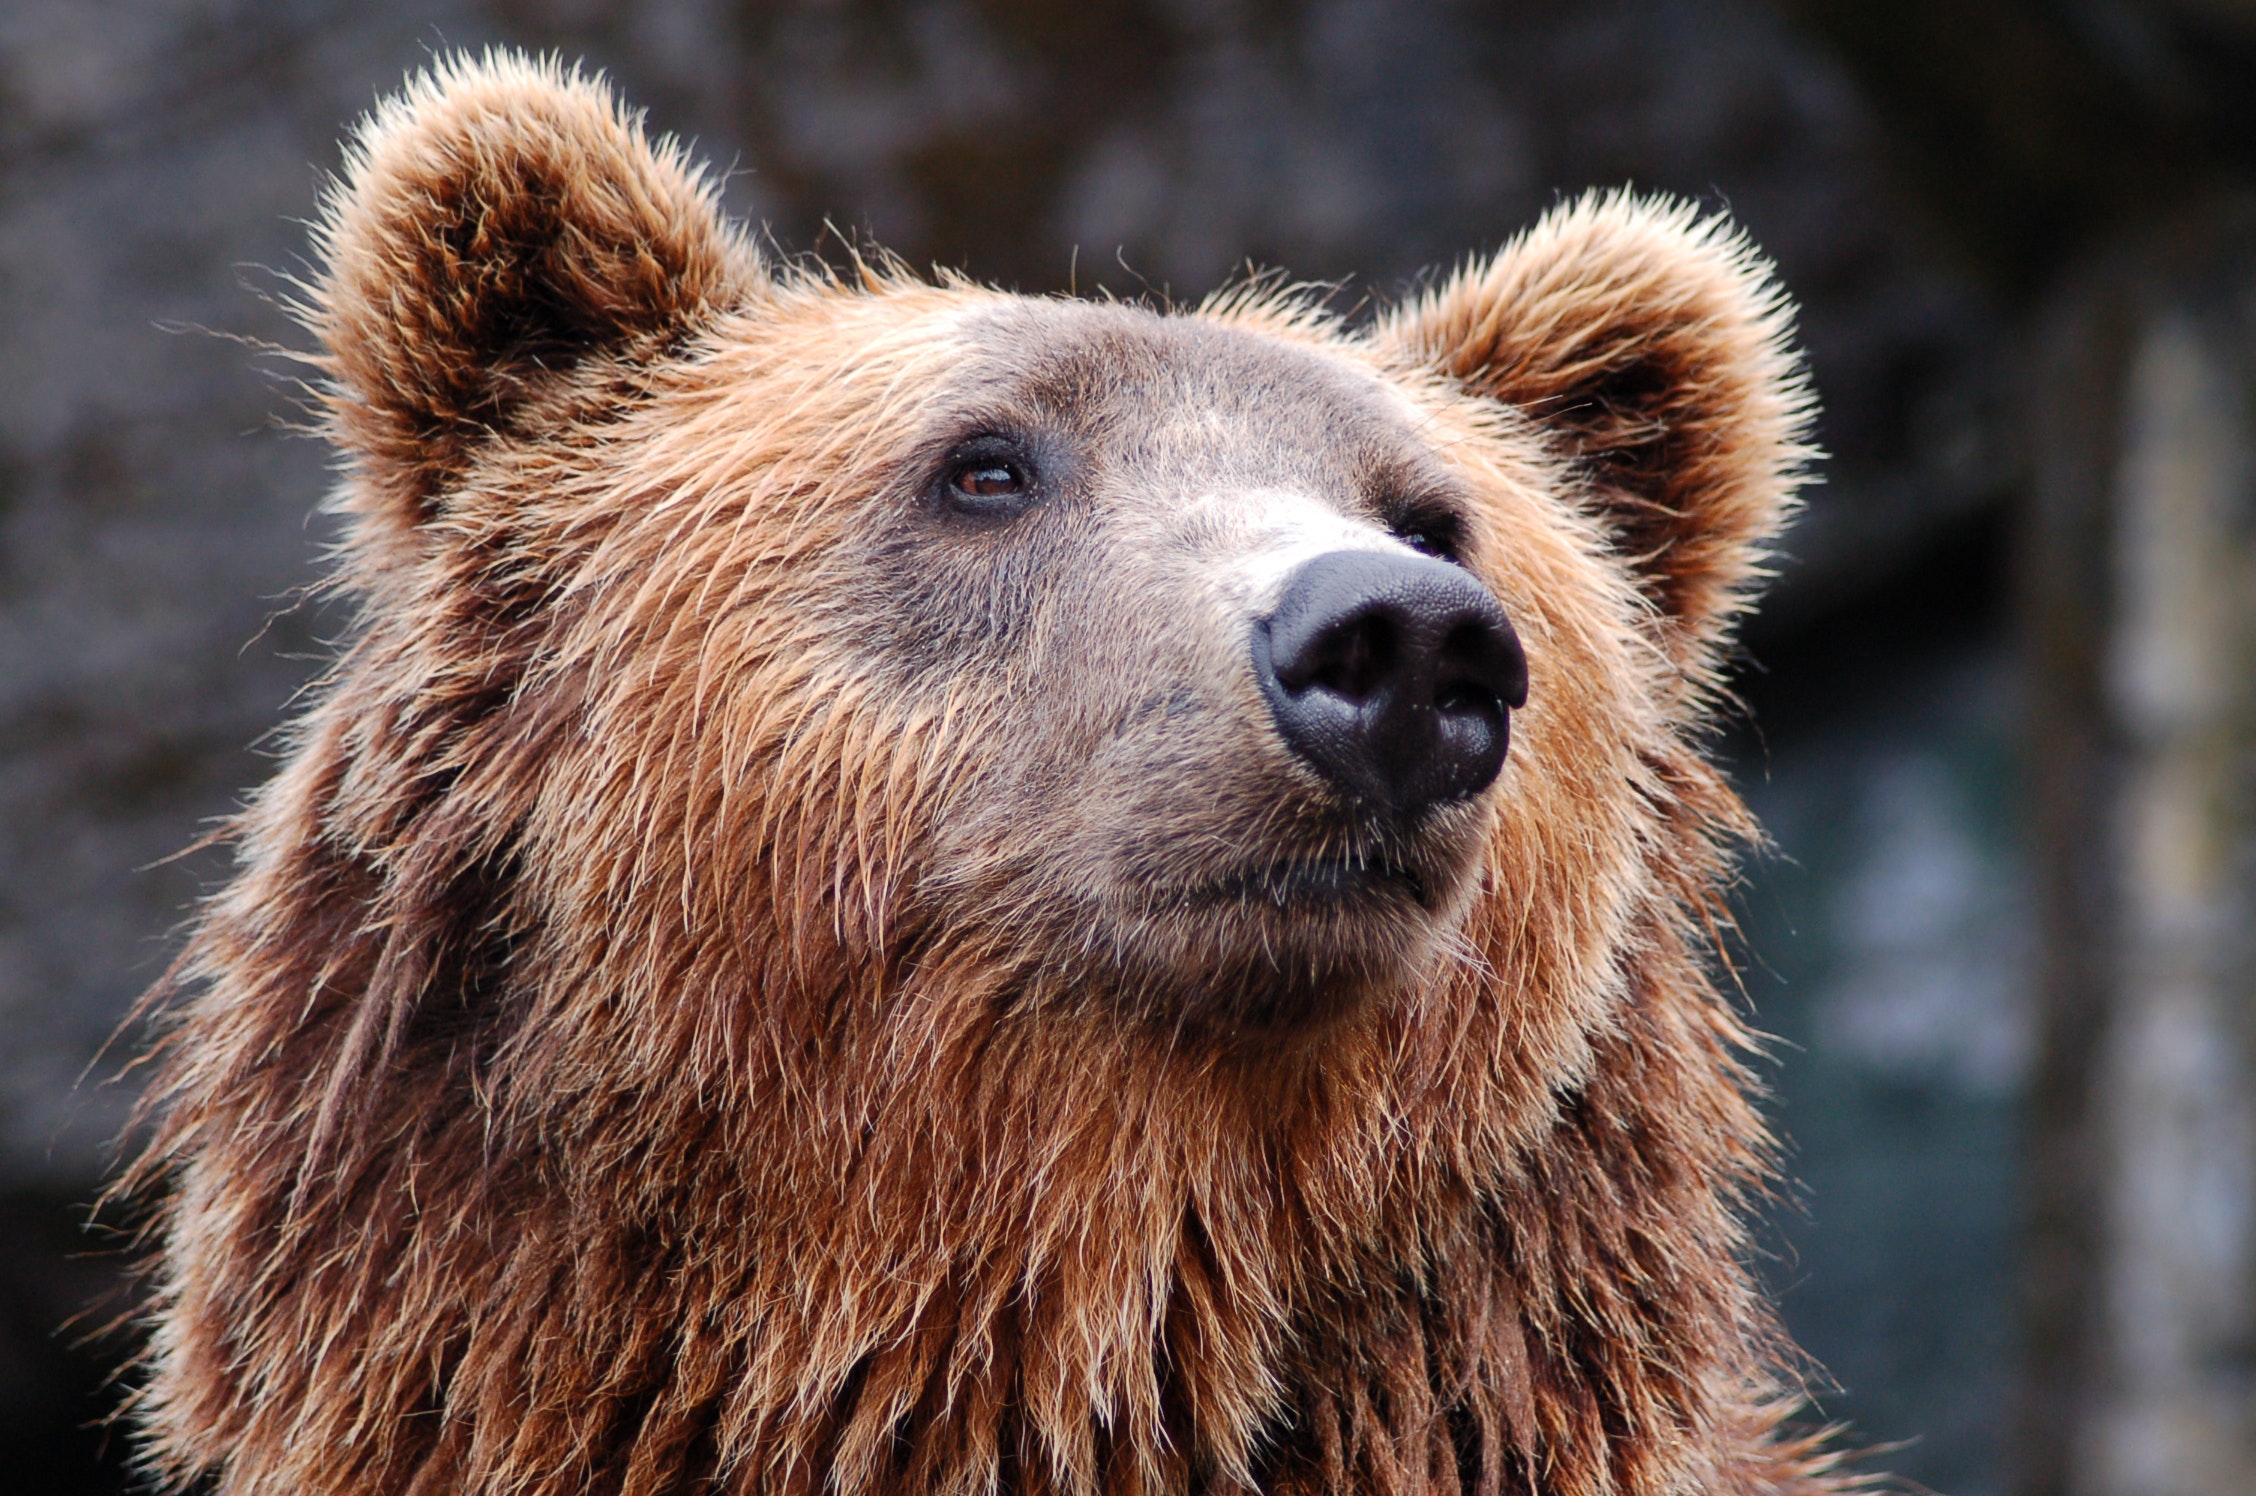 Καφέ αρκούδα: Σκότωσε 26χρονο στις Άλπεις - Αναβλήθηκε η θανάτωσή της, αντιδρούν φιλοζωικές οργανώσεις